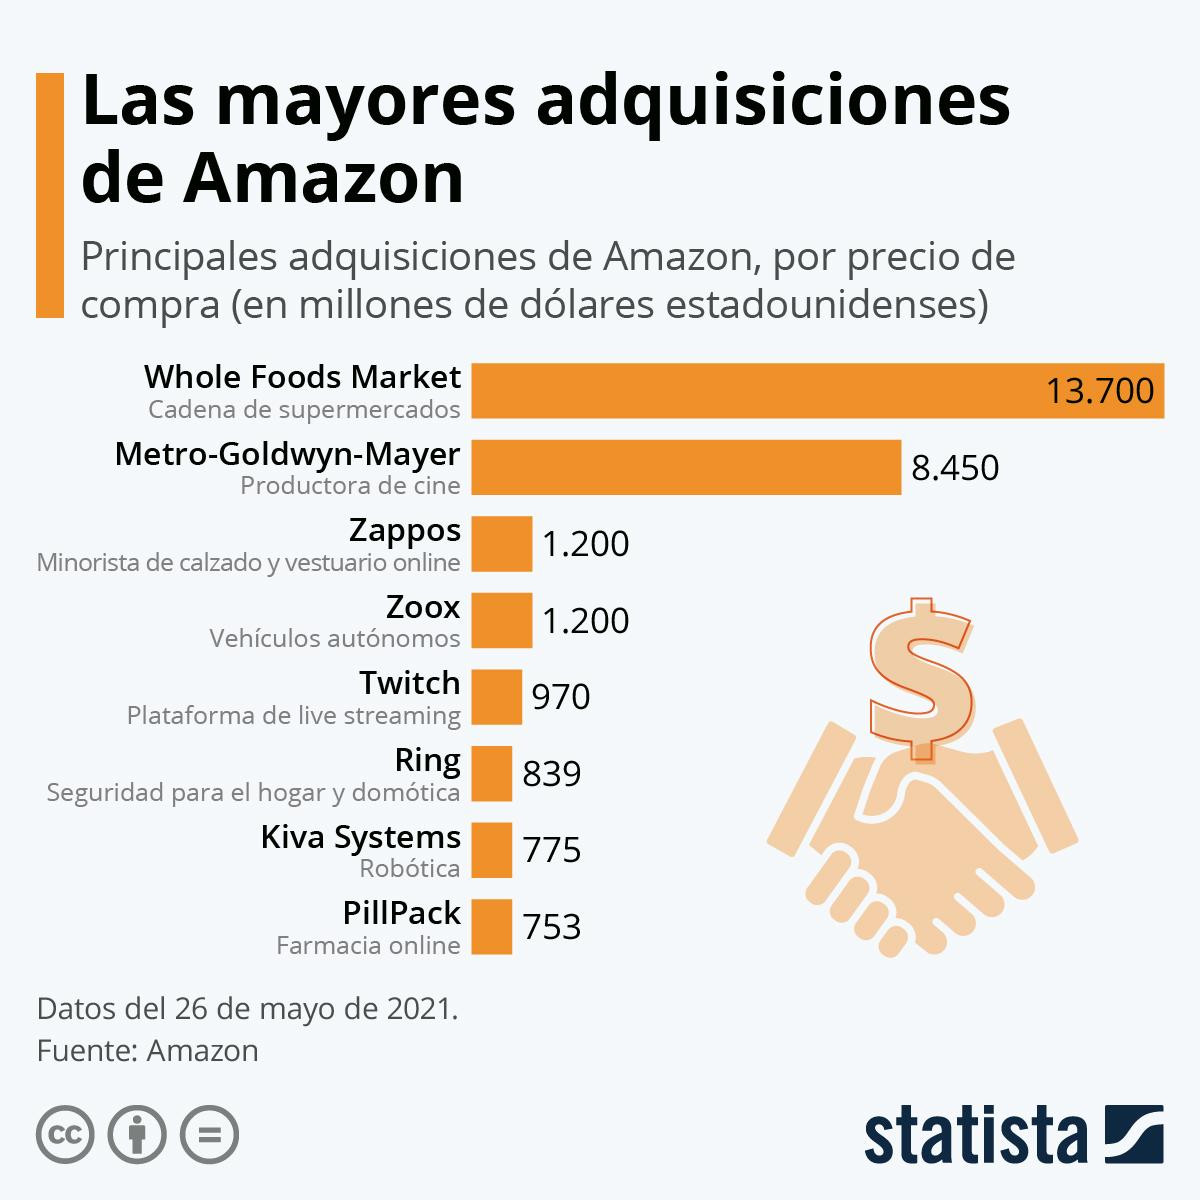 Las mayores adquisiciones de Amazon en millones de dólares / AMAZON